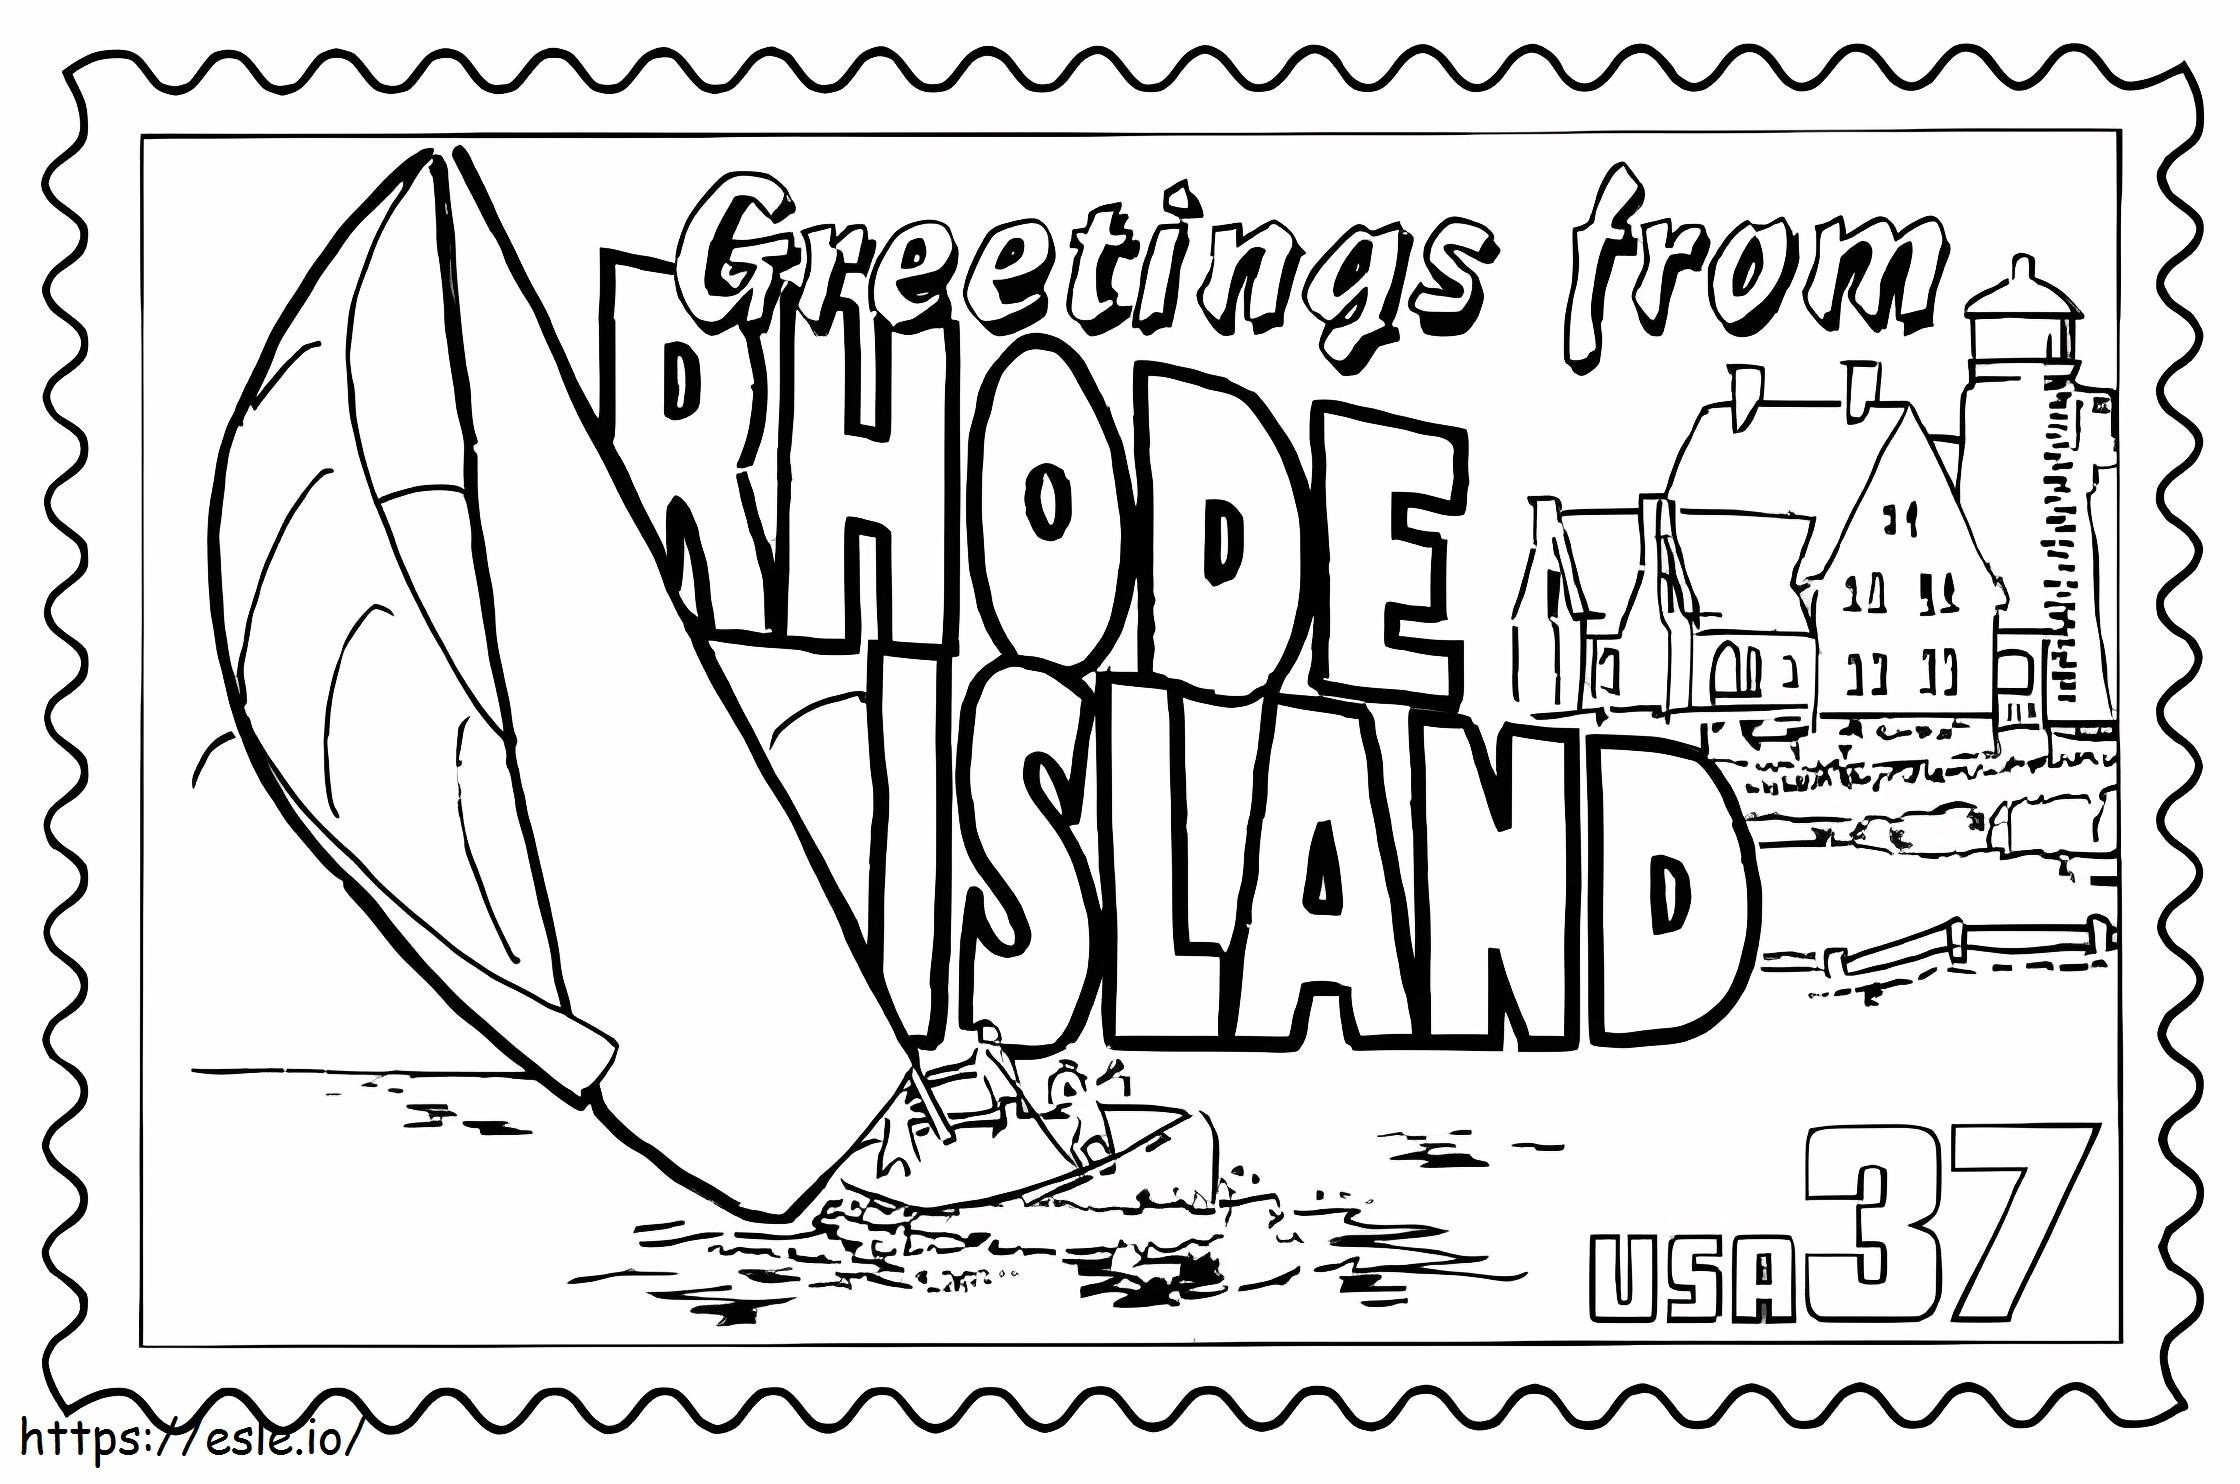 Rhode Island-Stempel ausmalbilder